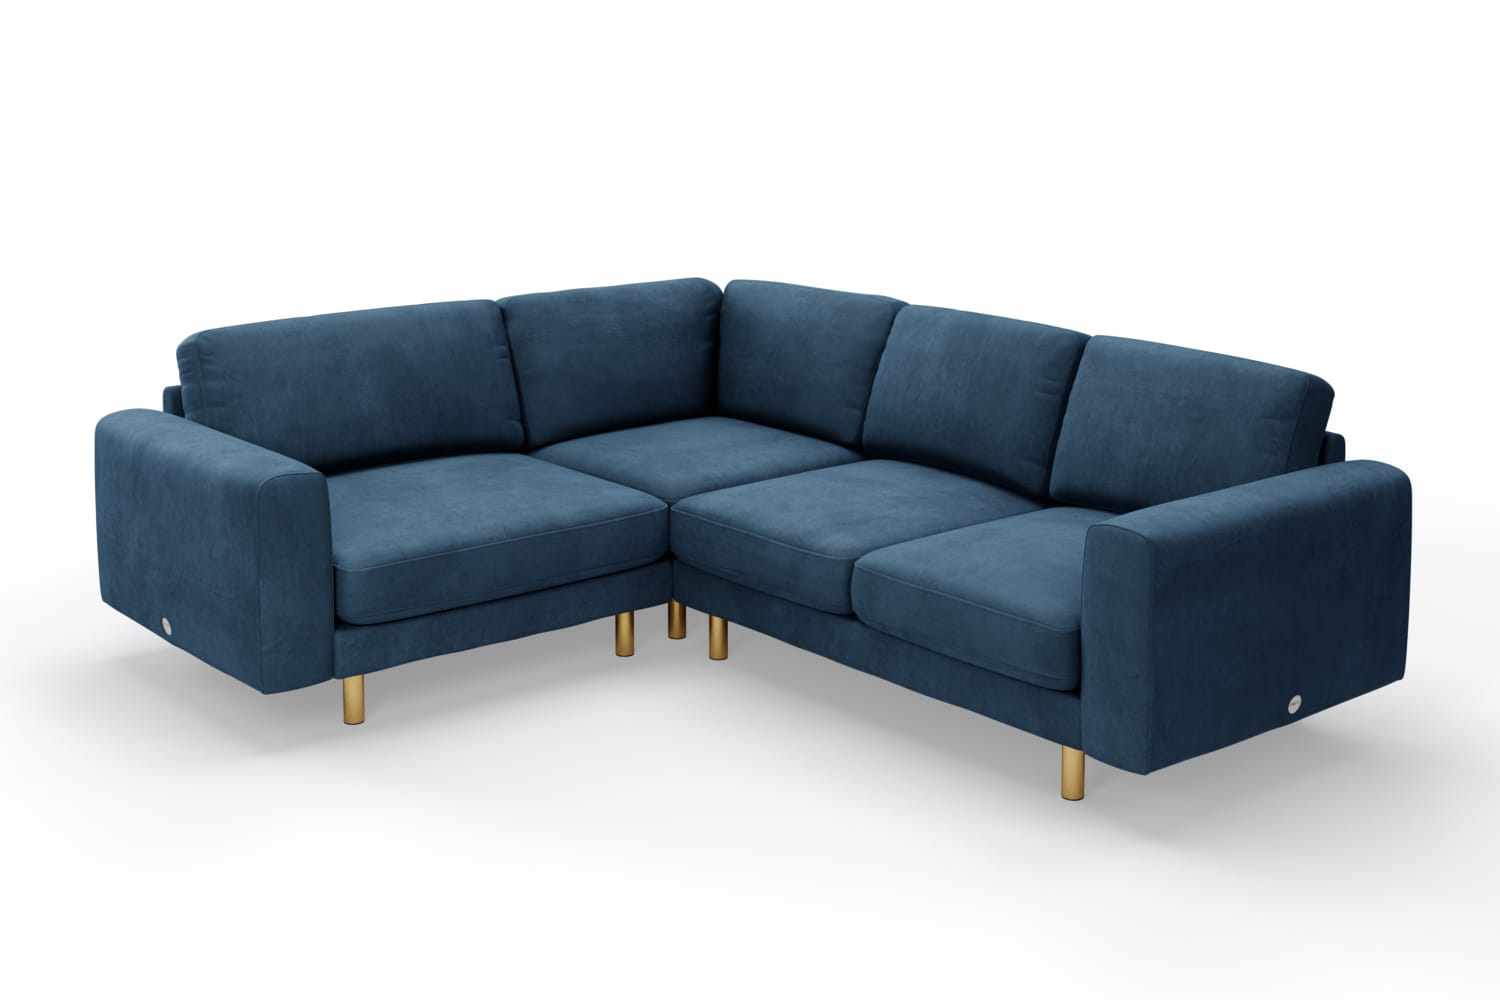 SNUG | The Big Chill Corner Sofa Small in Blue Steel